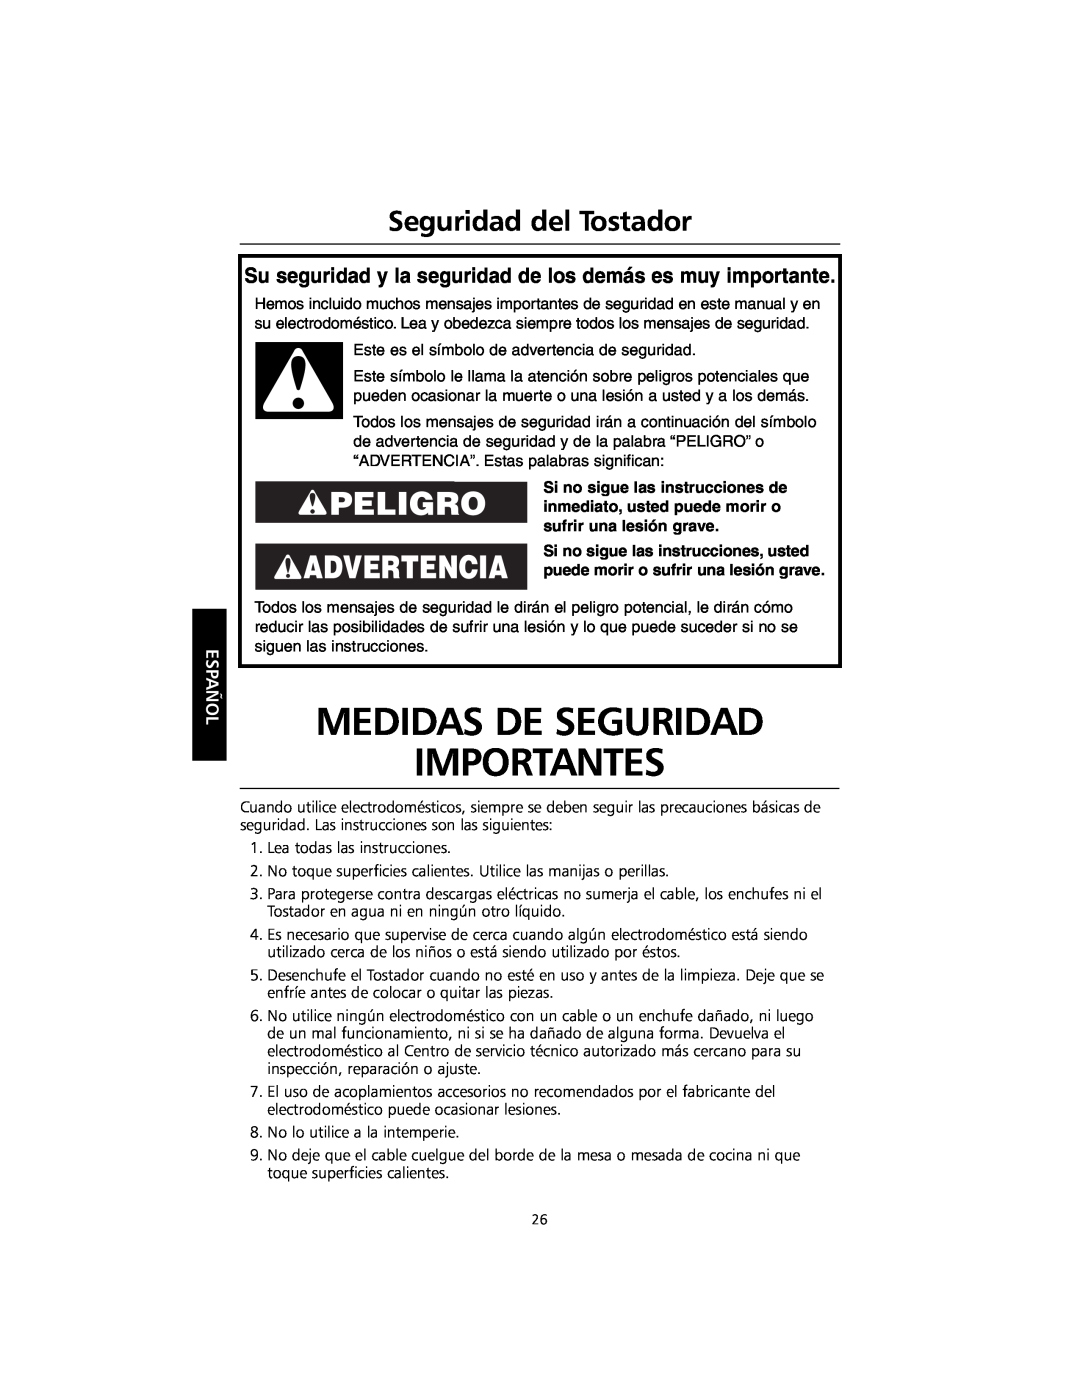 KitchenAid KMTT200 Advertencia, Medidas De Seguridad Importantes, Seguridad del Tostador, Español, sufrir una lesión grave 